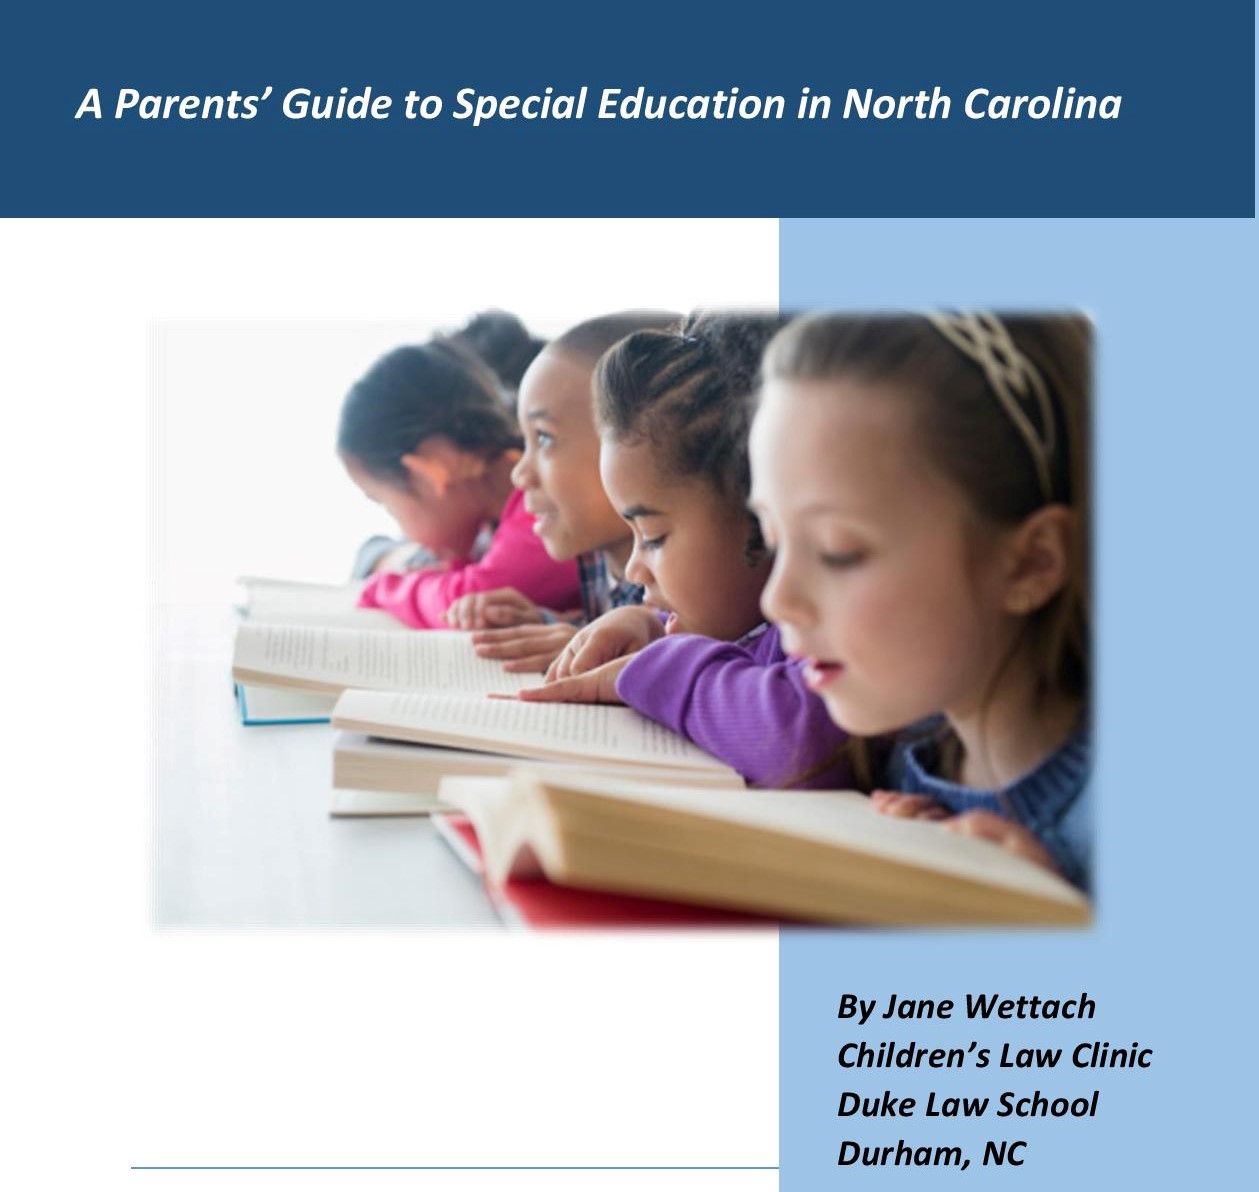 Imagen de niños leyendo con un texto que dice Una guía de padres para la educación especial en Carolina del Norte